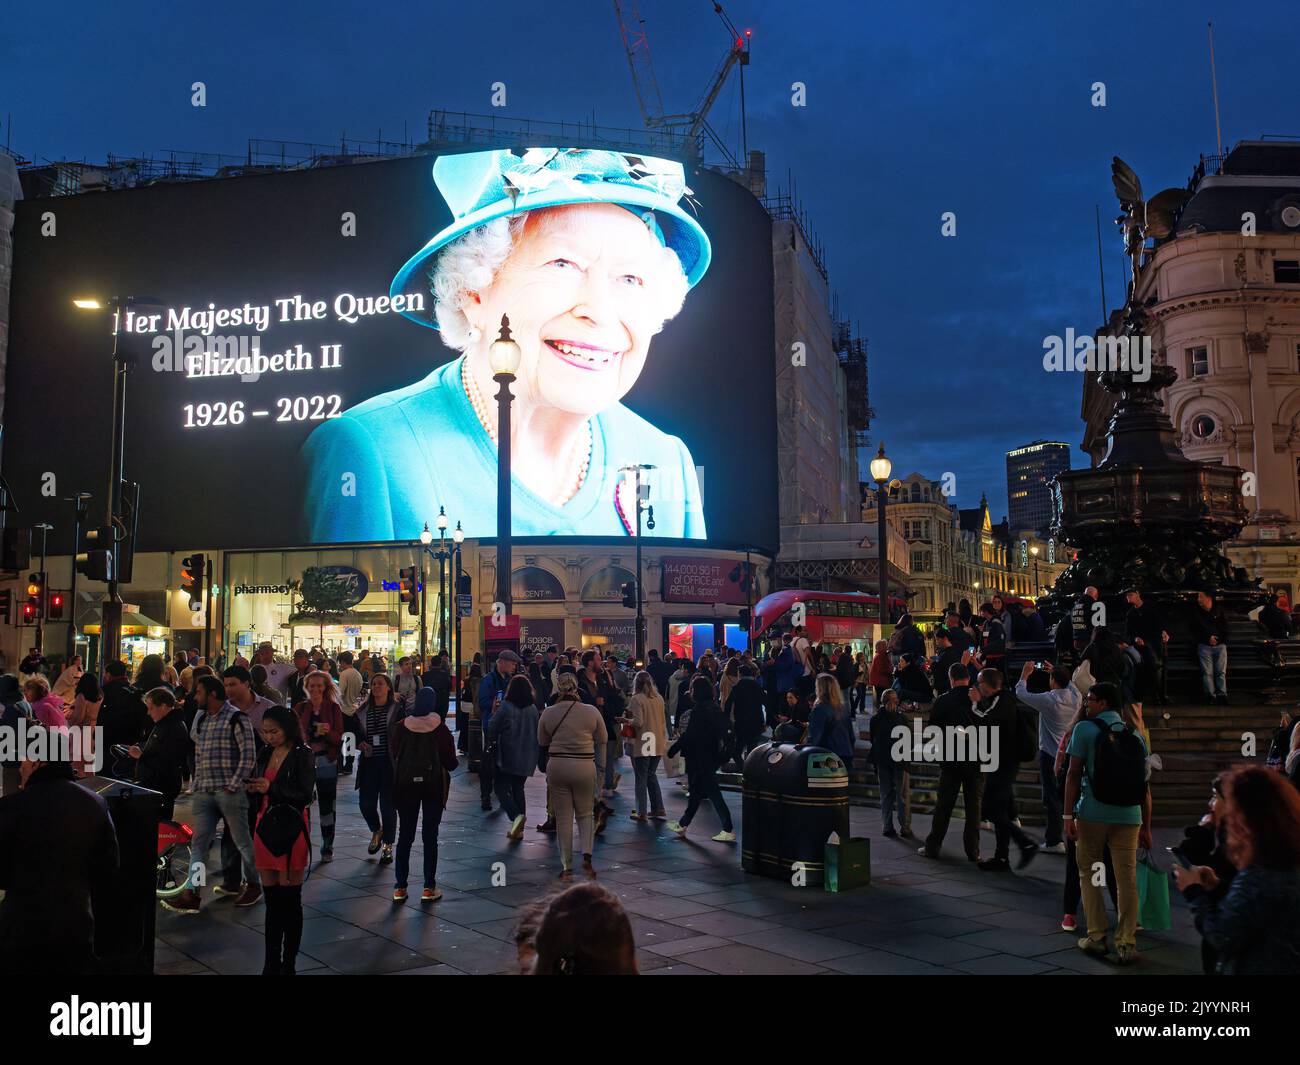 Le grand écran de Piccadilly Circus à Londres affiche une image spectaculaire de la reine Elizabeth II immédiatement après sa mort Banque D'Images